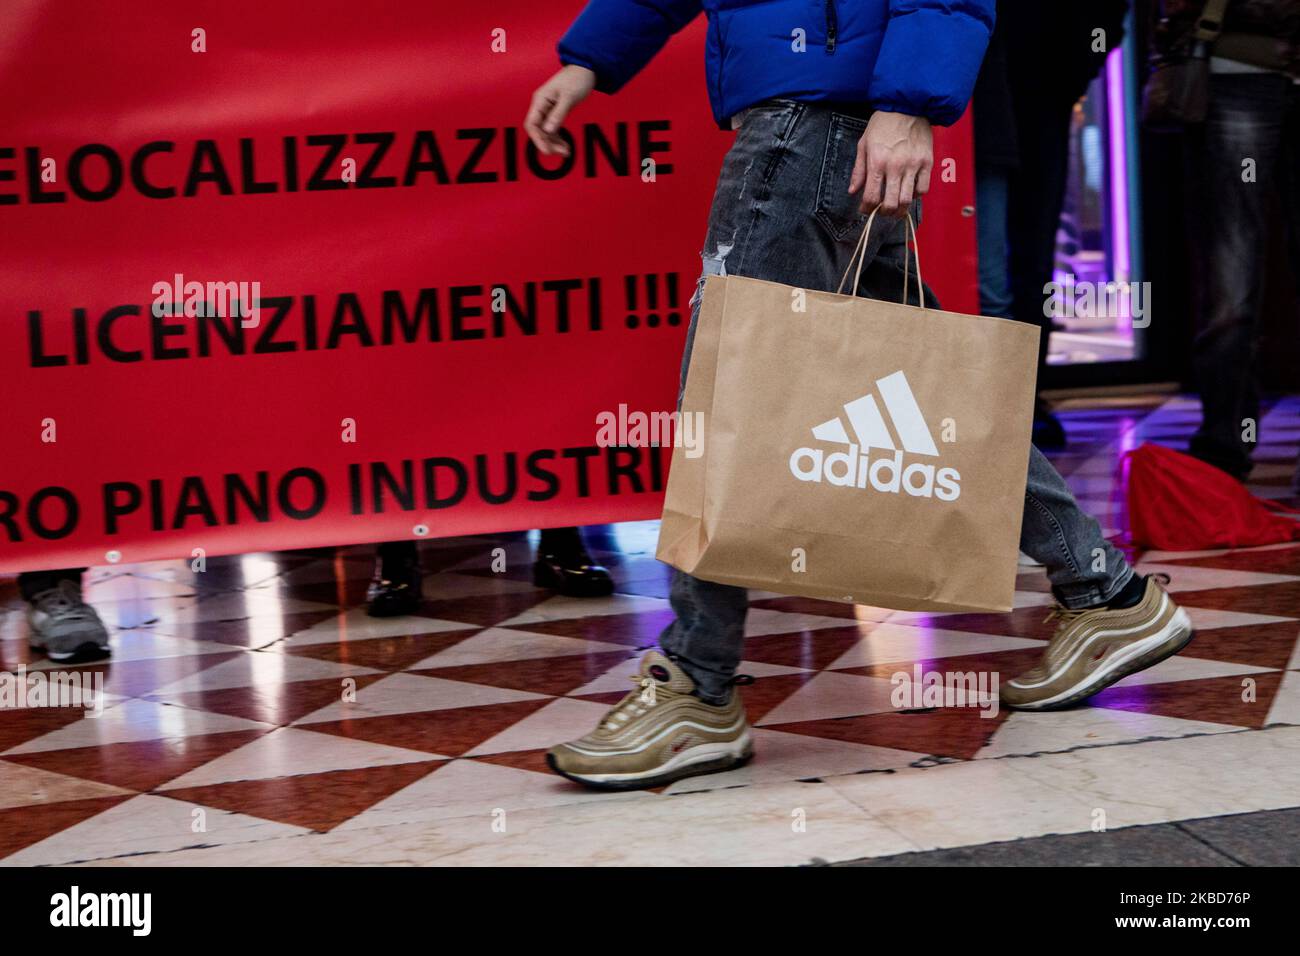 Empleados de la conocida marca de ropa Adidas protestan frente a la tienda  Adidas en Milán contra los 41 despidos debidos a la reubicación de  determinadas actividades de producción en Portugal, el